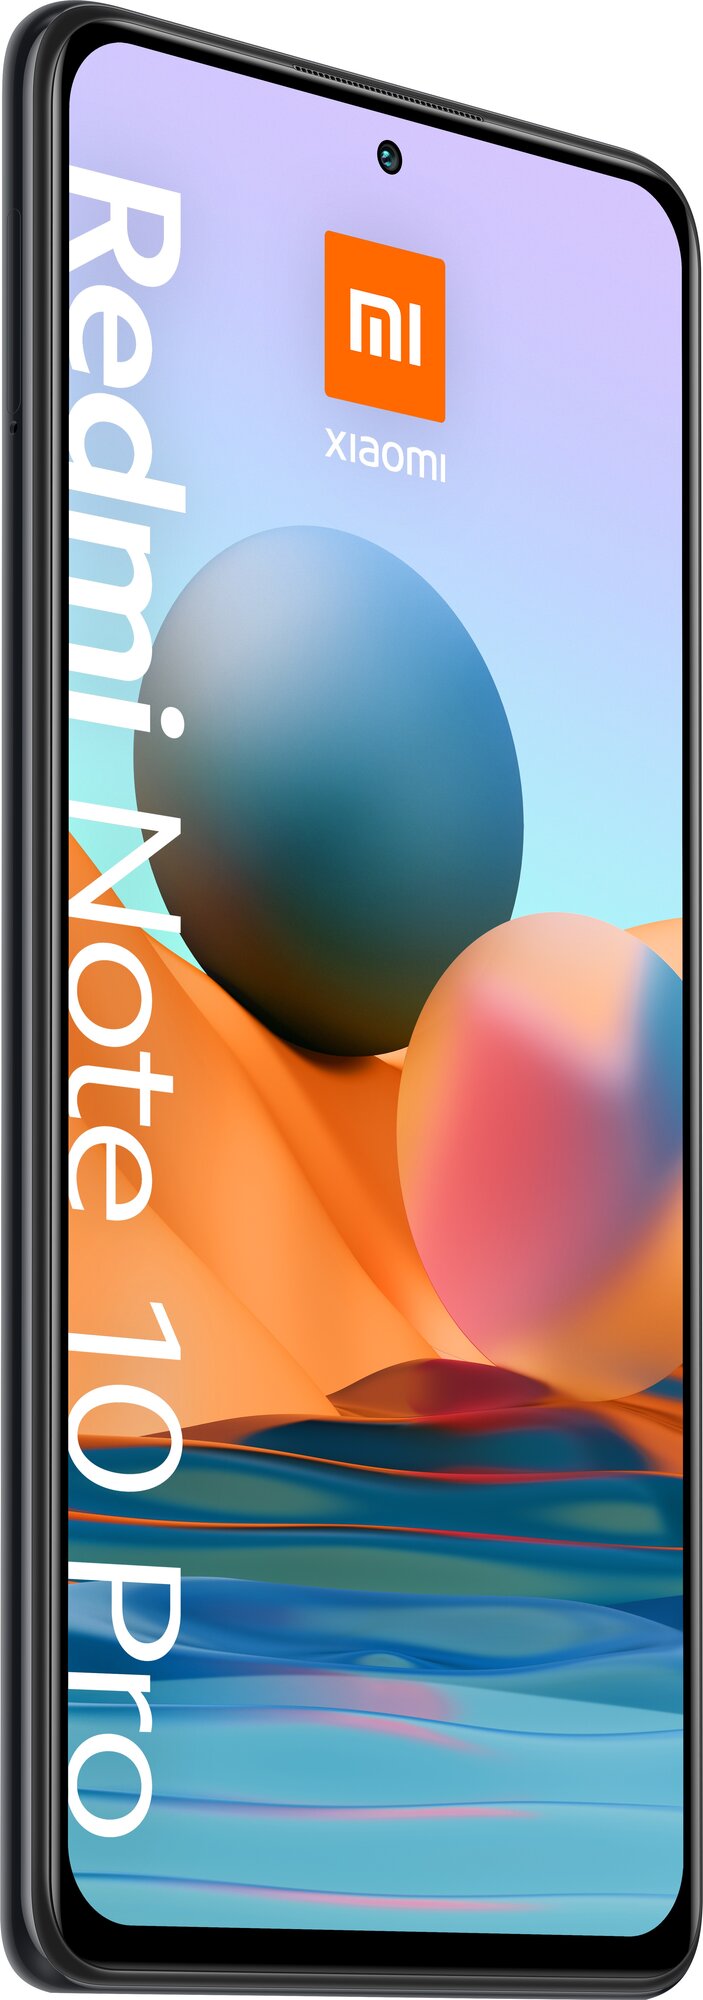 Xiaomi - фото №4